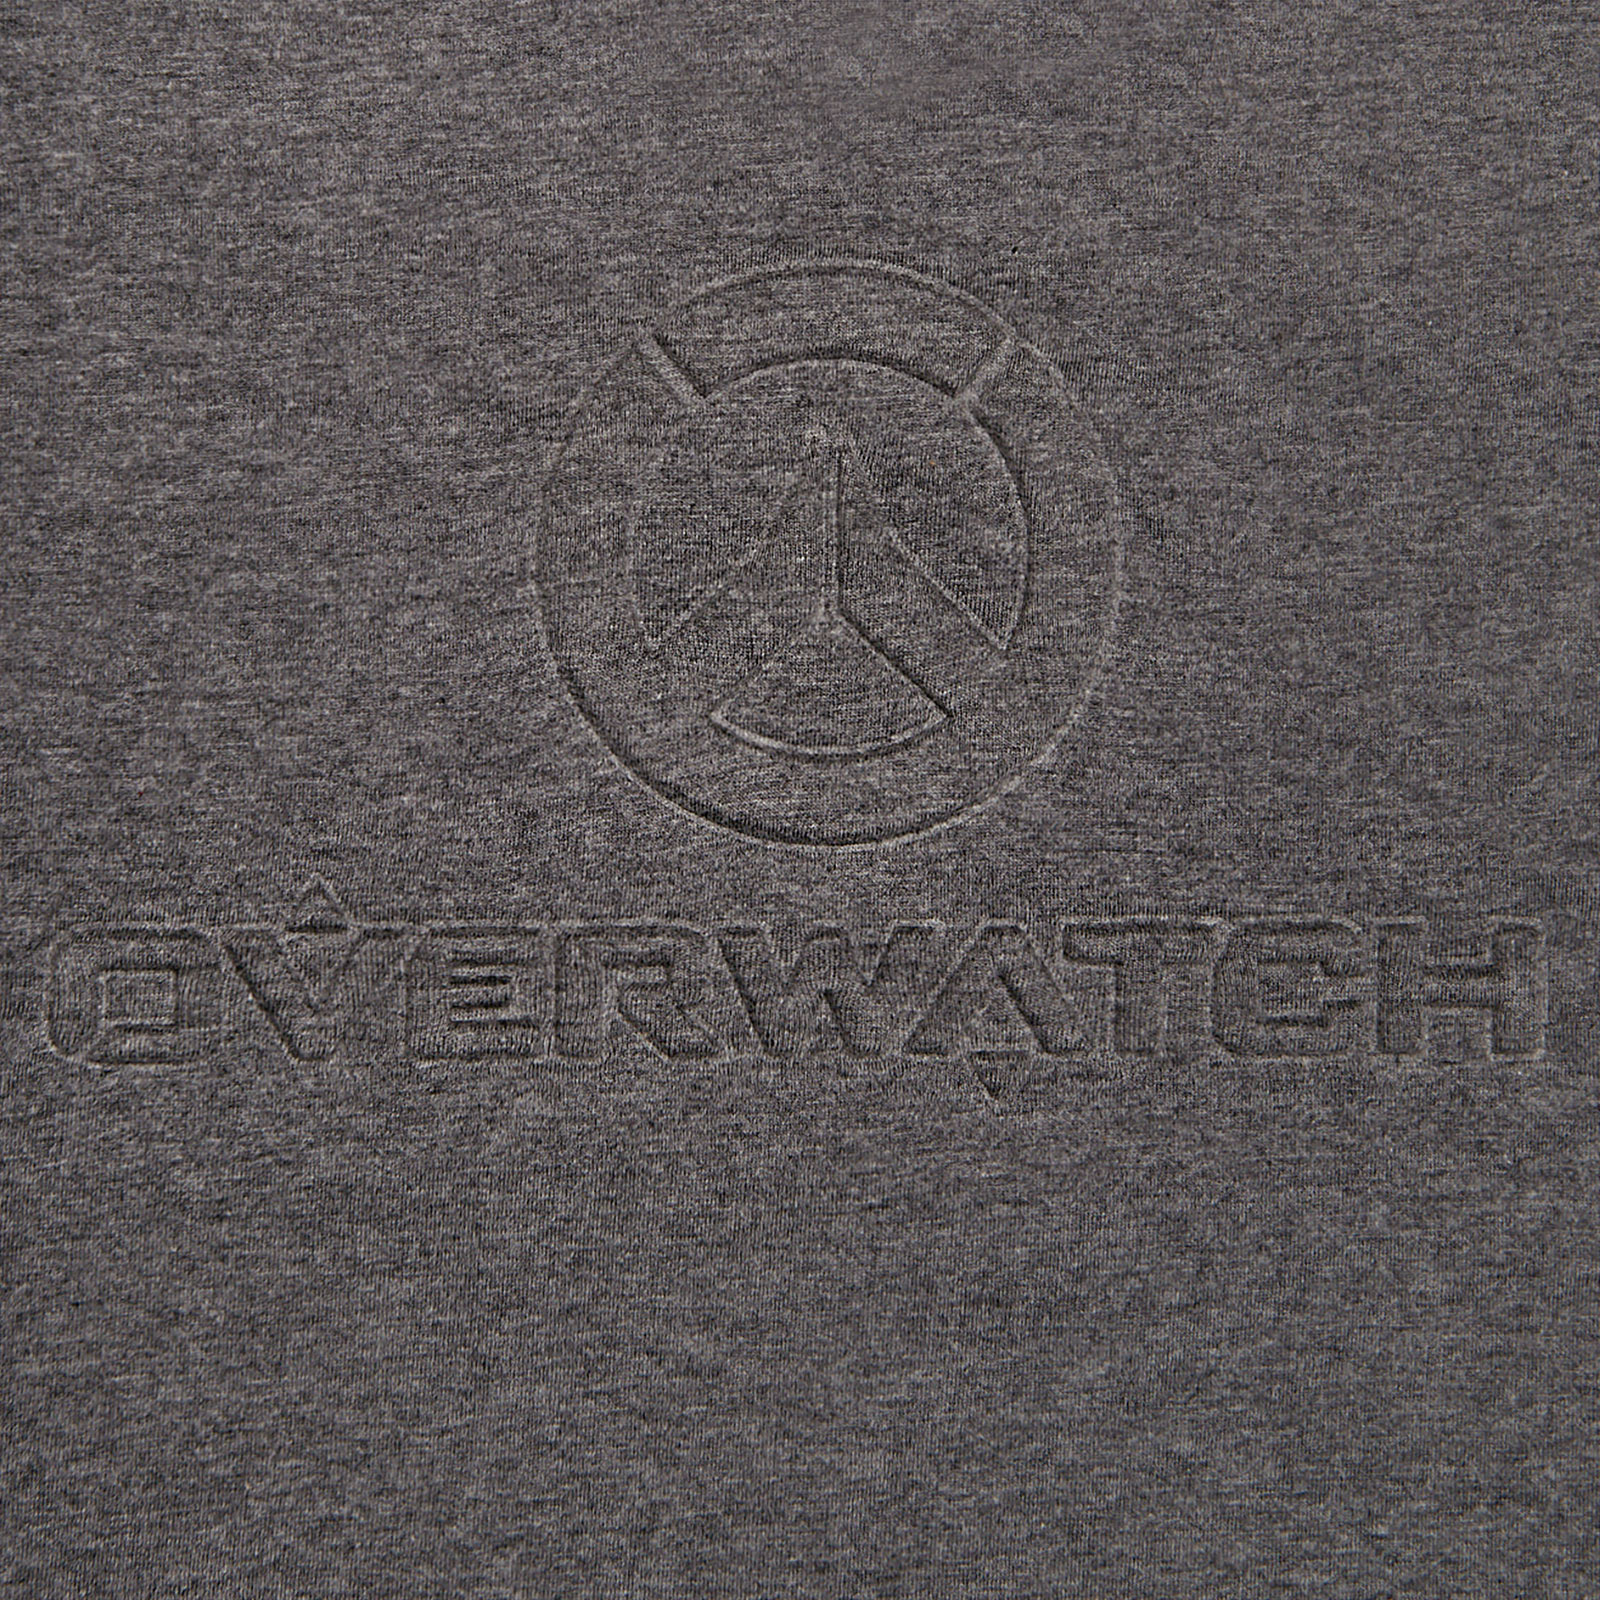 Overwatch - 3D Logo T-Shirt grau